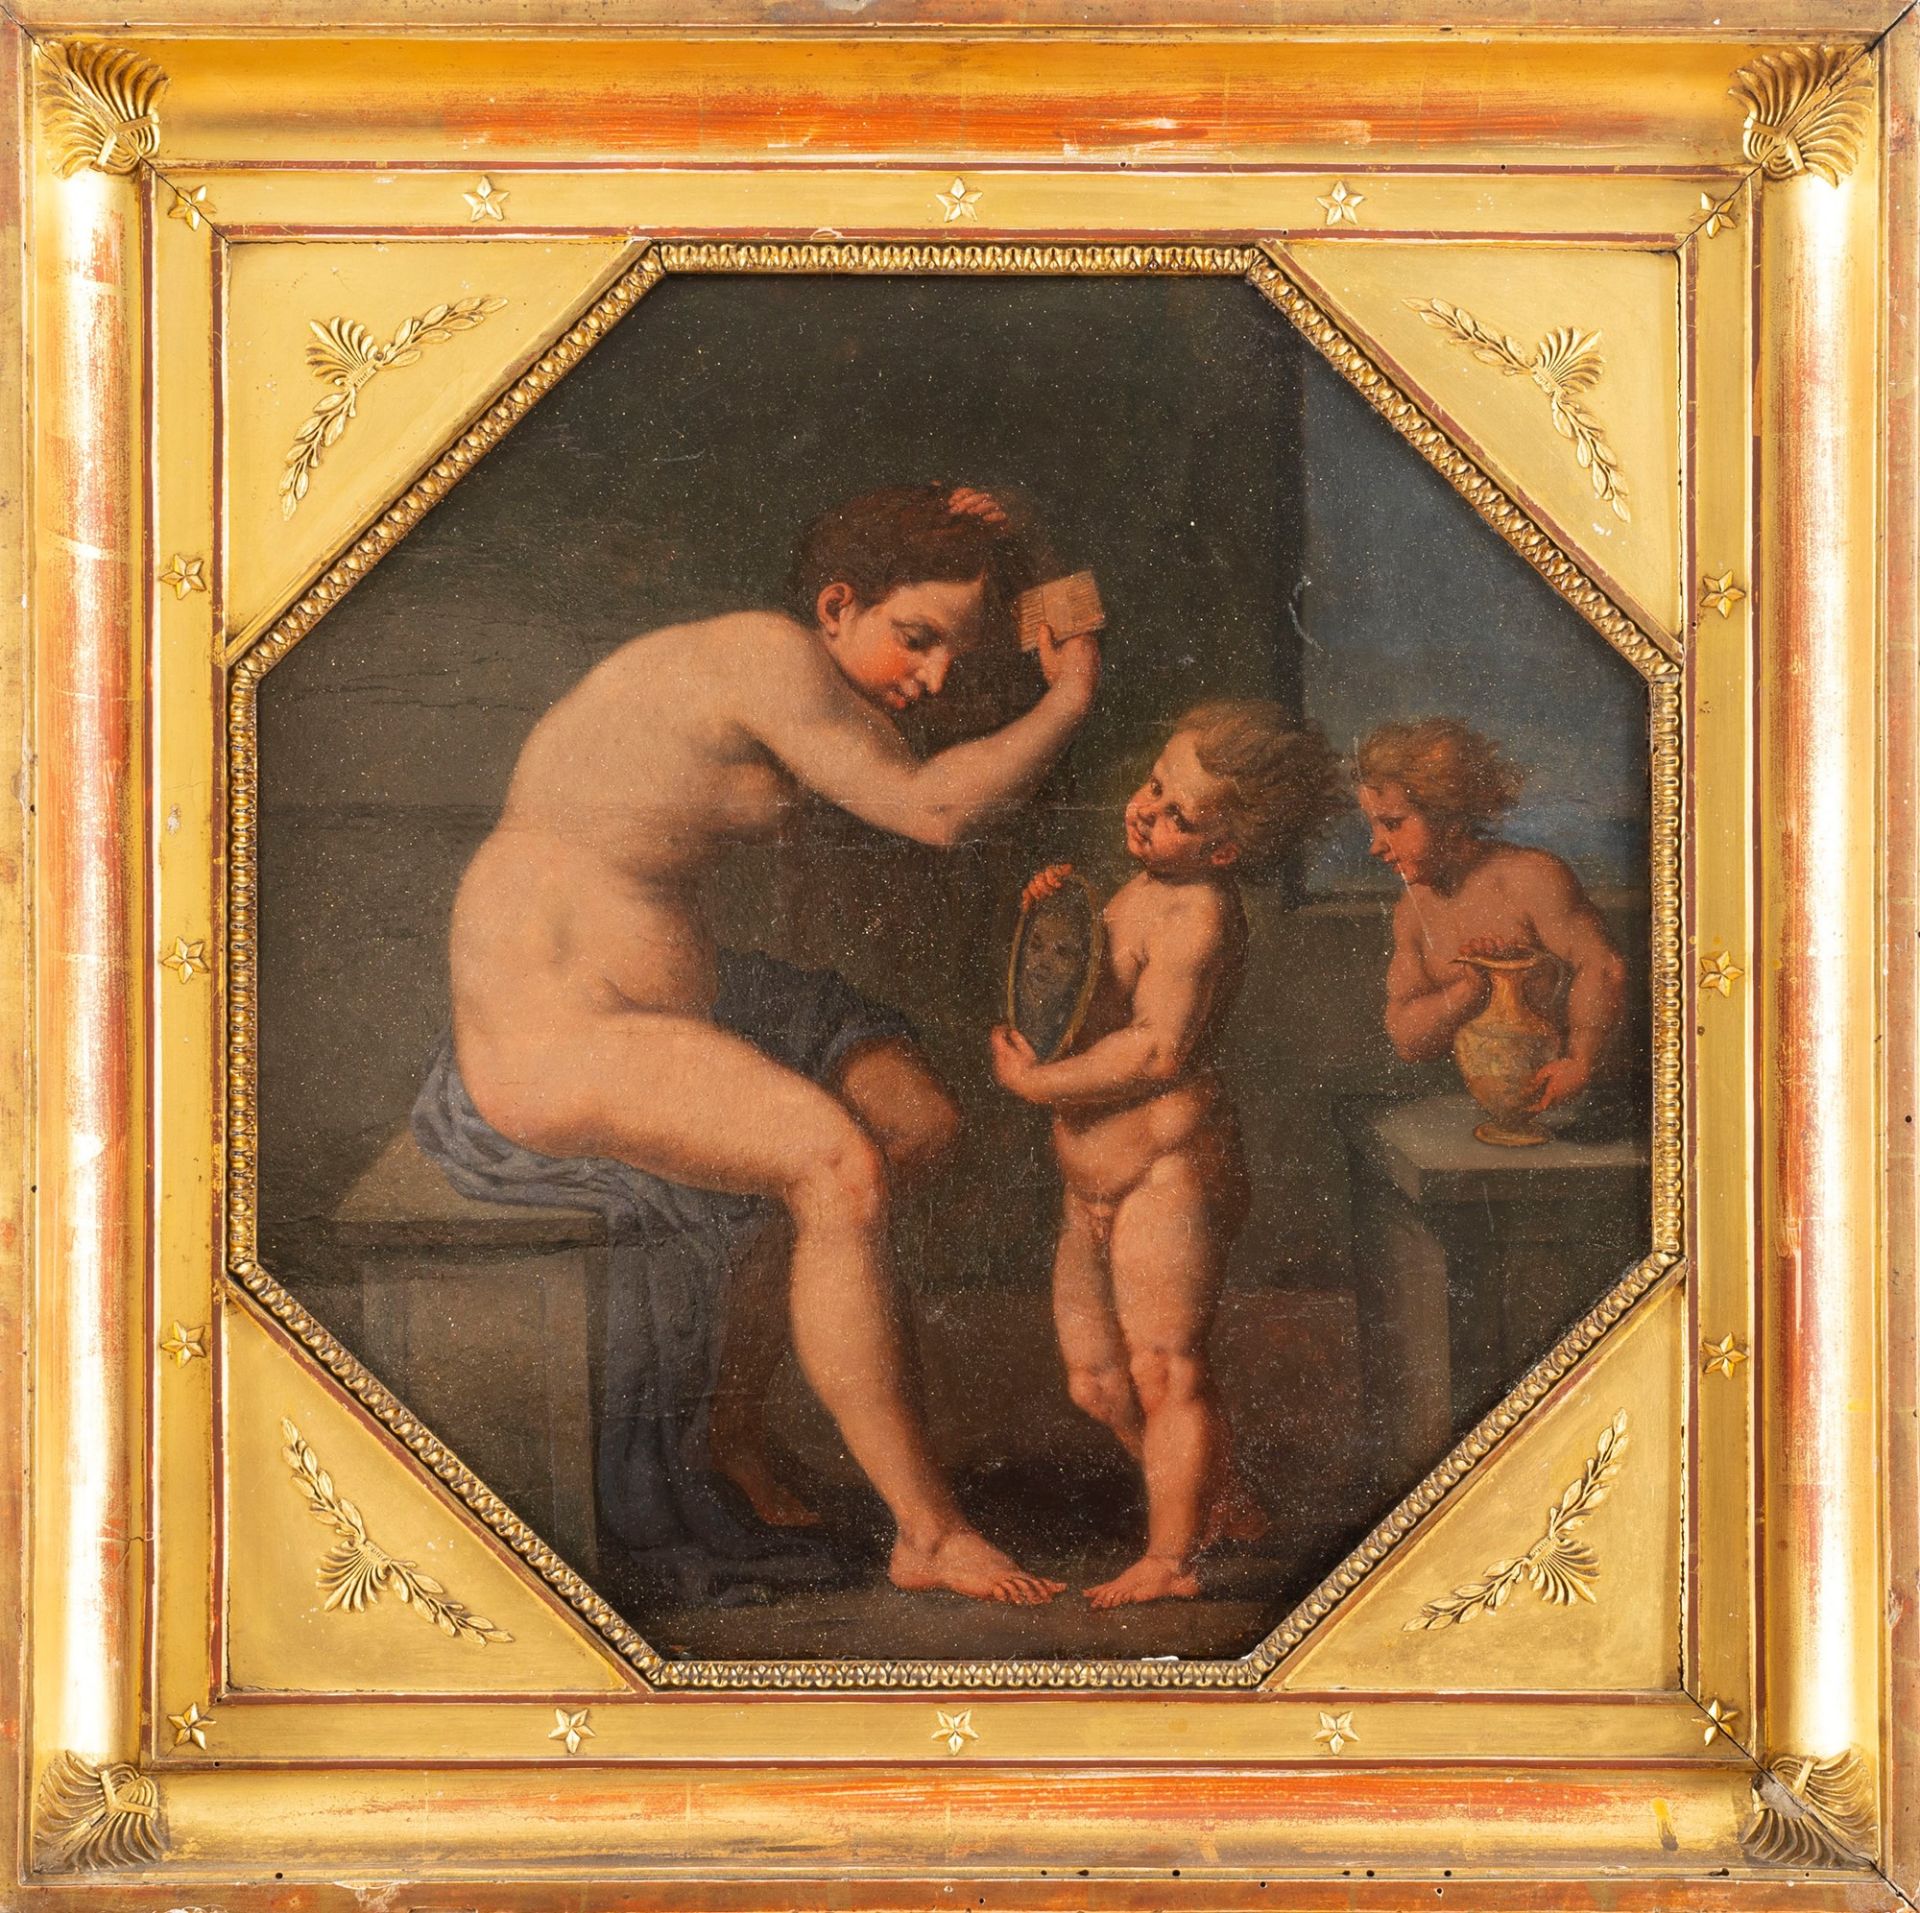 Emilian School, XVII century - Toilet of Venus - Image 2 of 3